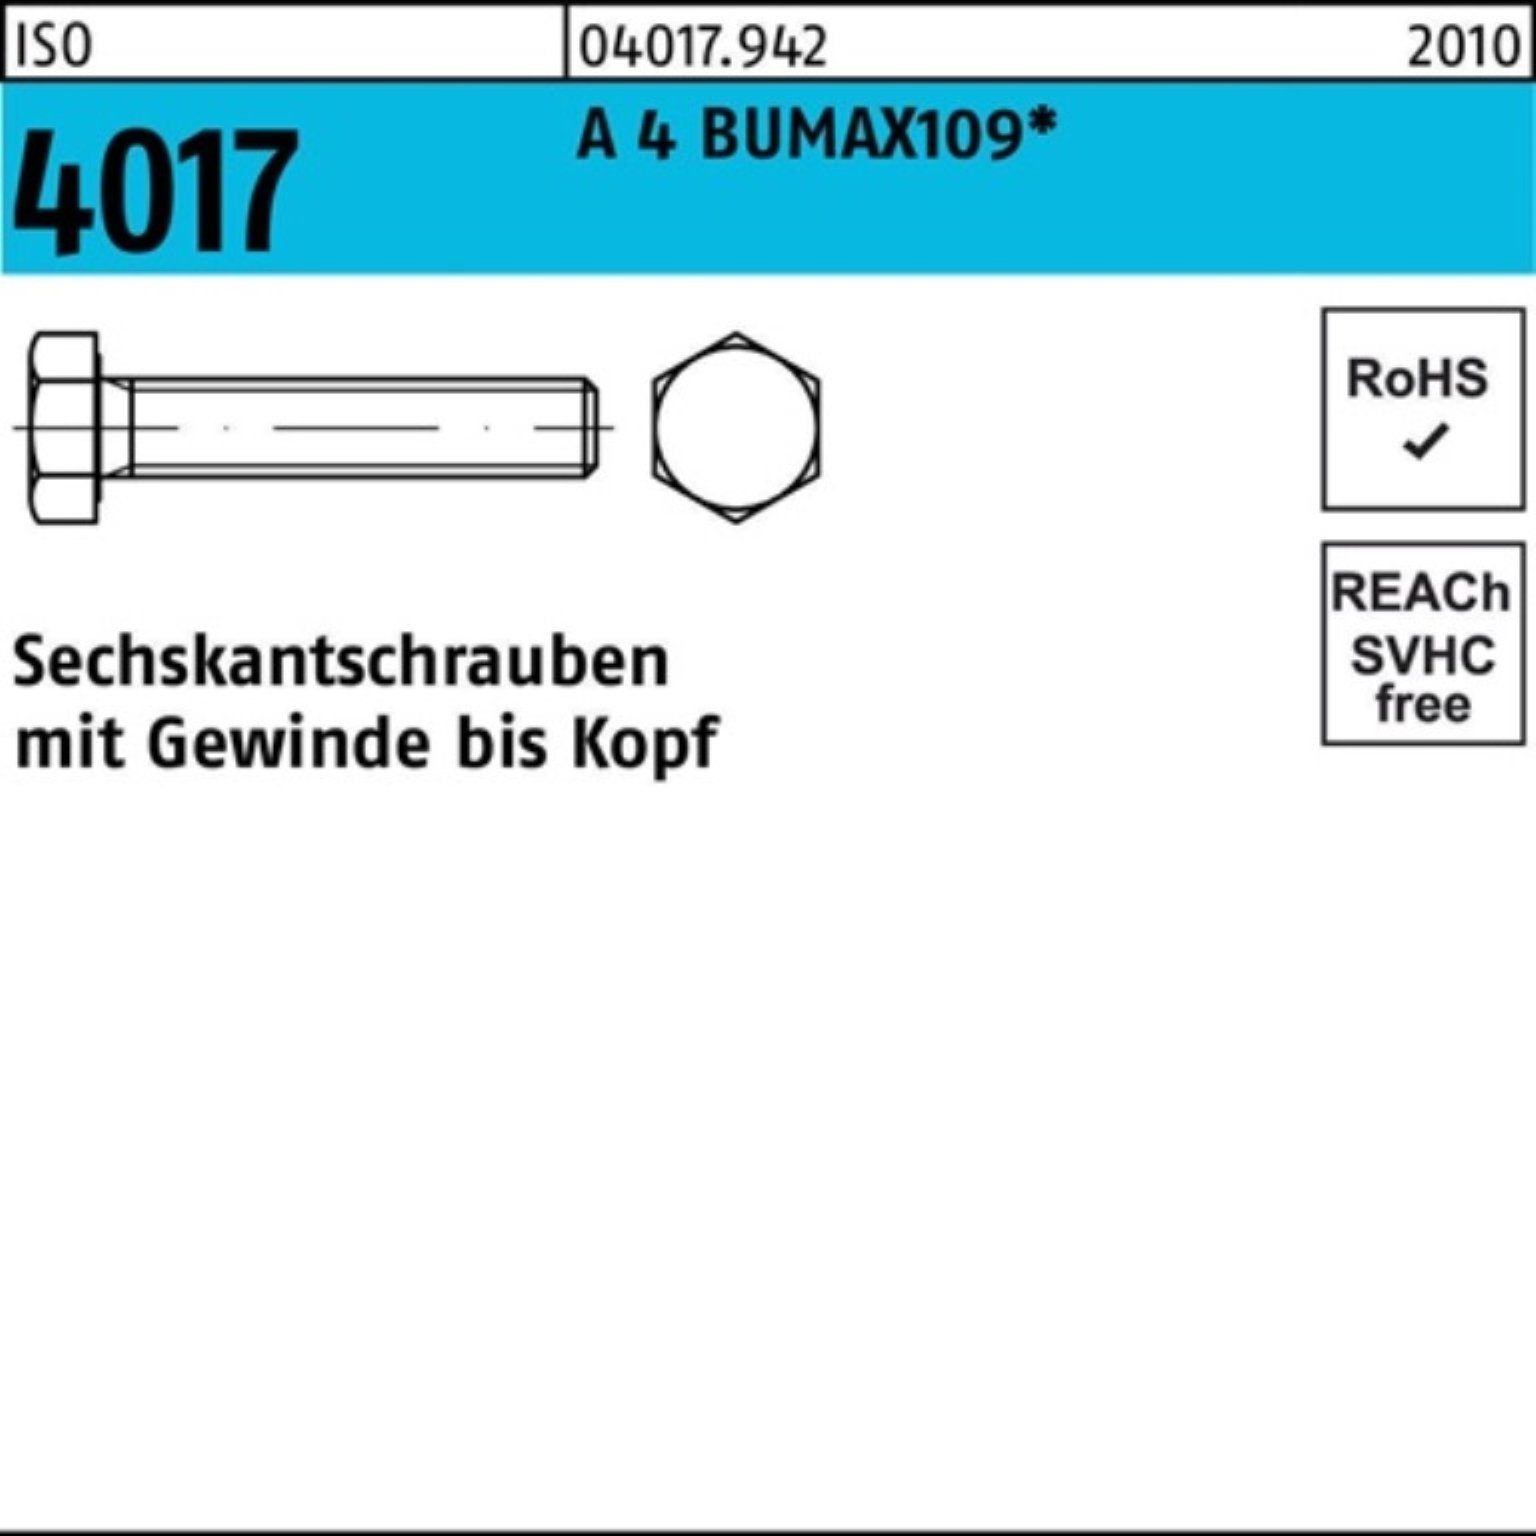 Bufab Sechskantschraube 100er Pack ISO 4017 A 30 Sechskantschraube 4 M10x BUMAX109 Stüc VG 50